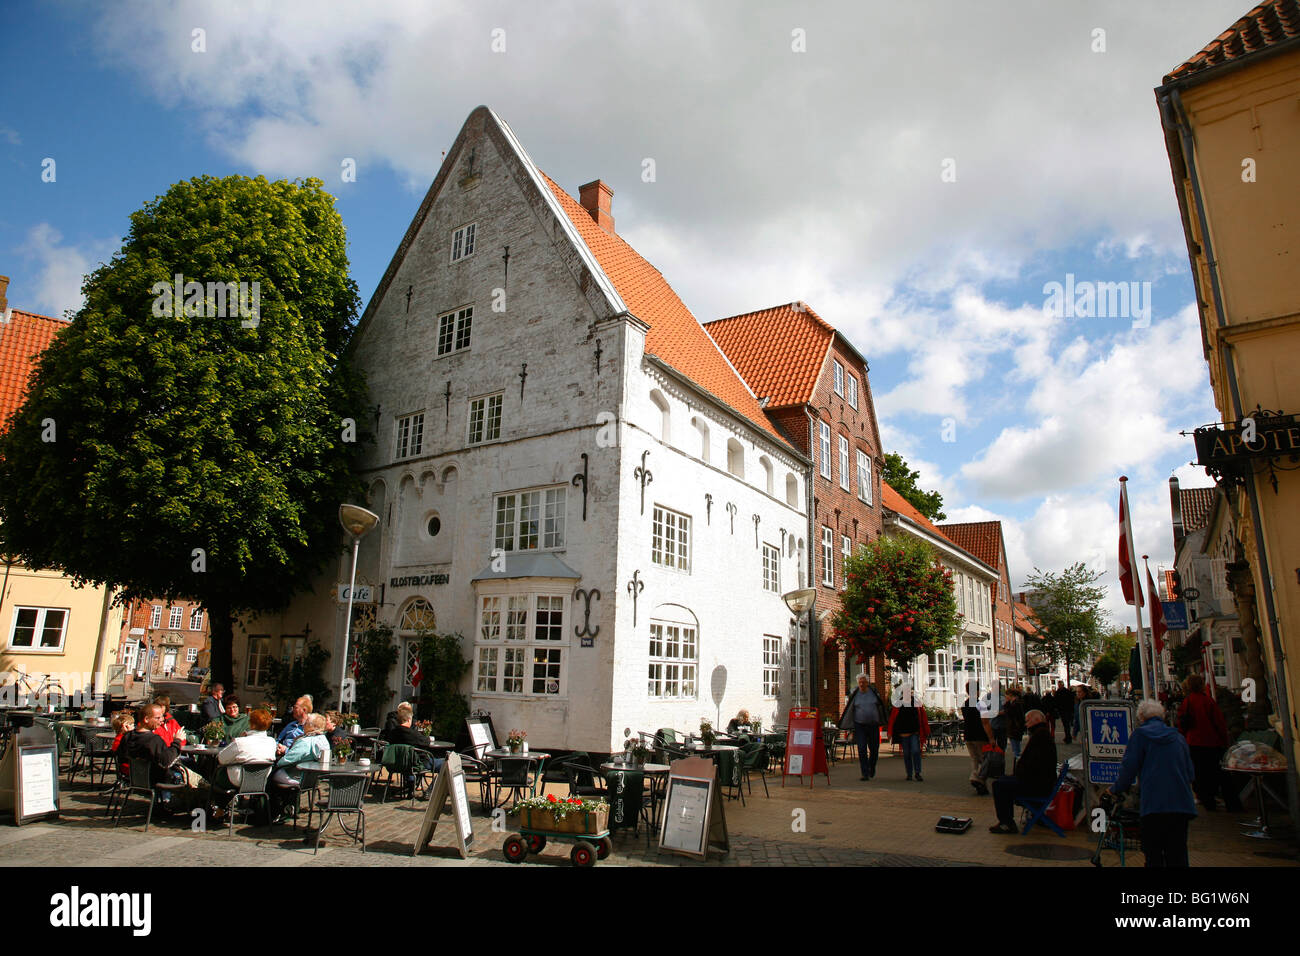 Denmark street scene stock photography images -